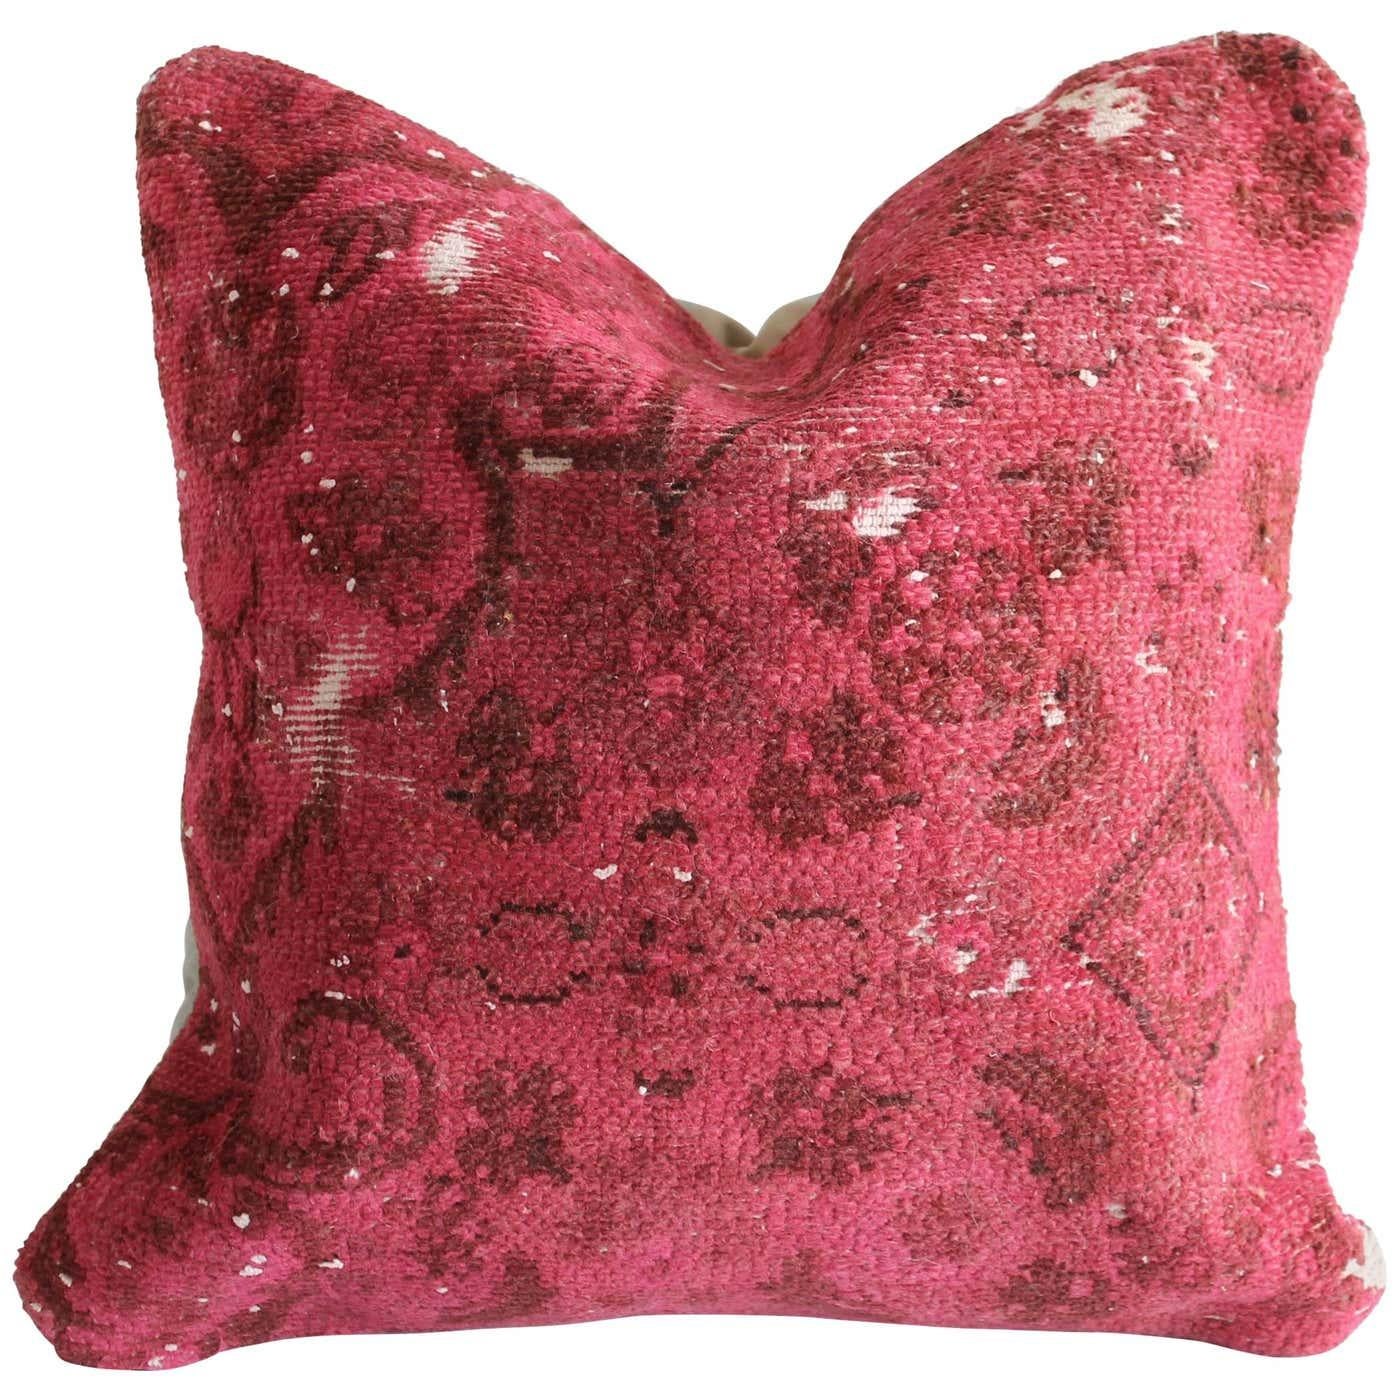 Coussin de tapis turc vintage
Une face d'oreiller rose foncé et rouge vif avec un support en coton.
Fermeture à glissière.
Taille : 20 x 20.